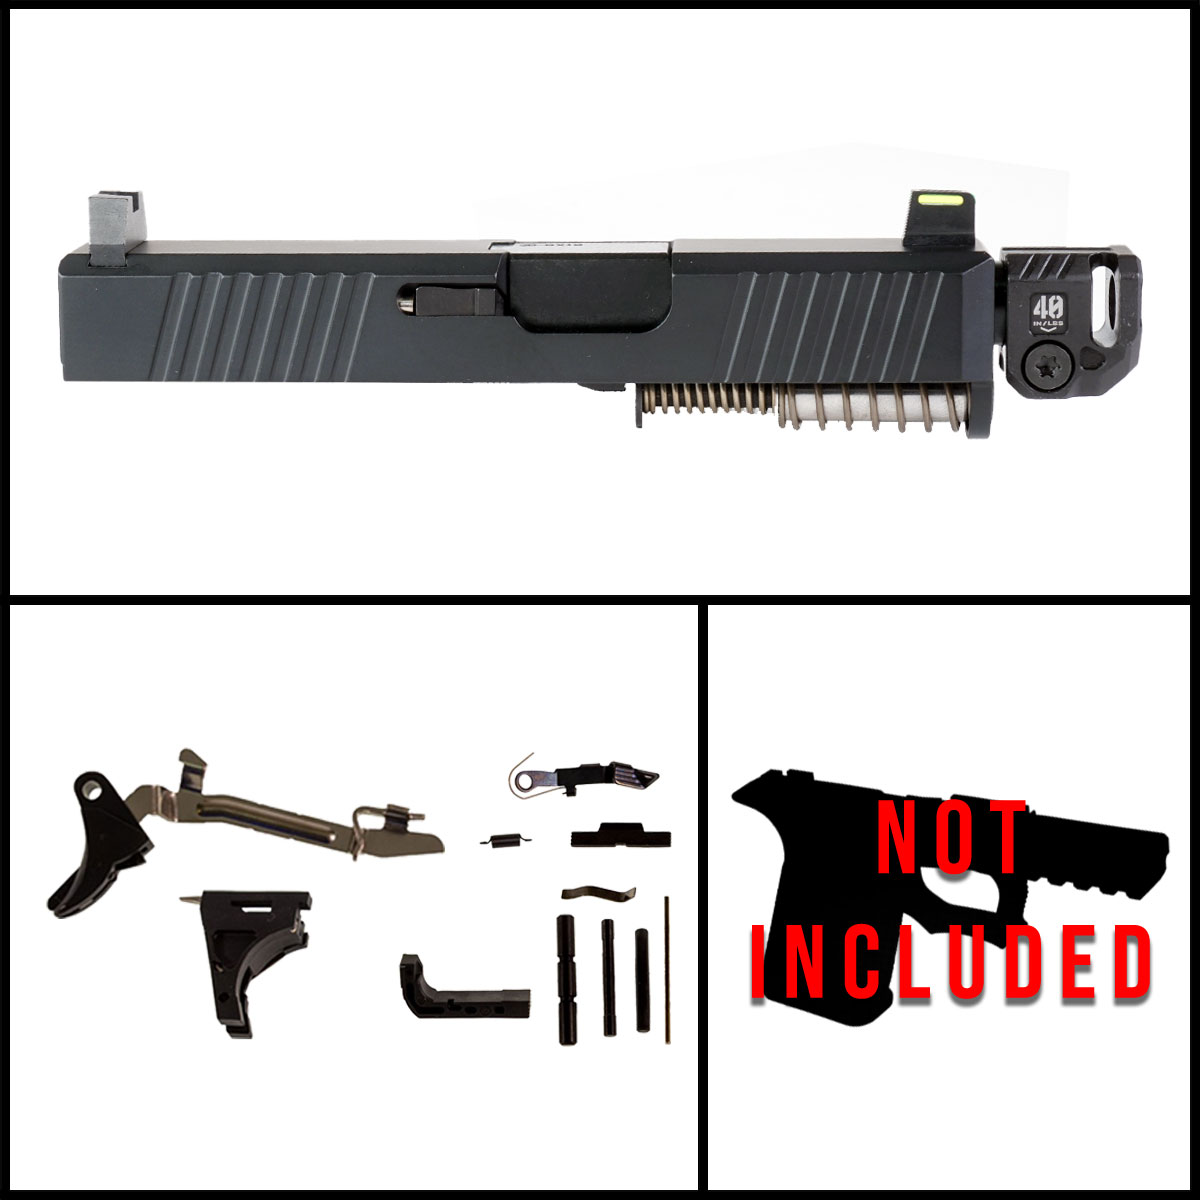 OTD 'Joint Resolution' 9mm Full Gun Kit - Glock 26 Gen 1-3 Compatible